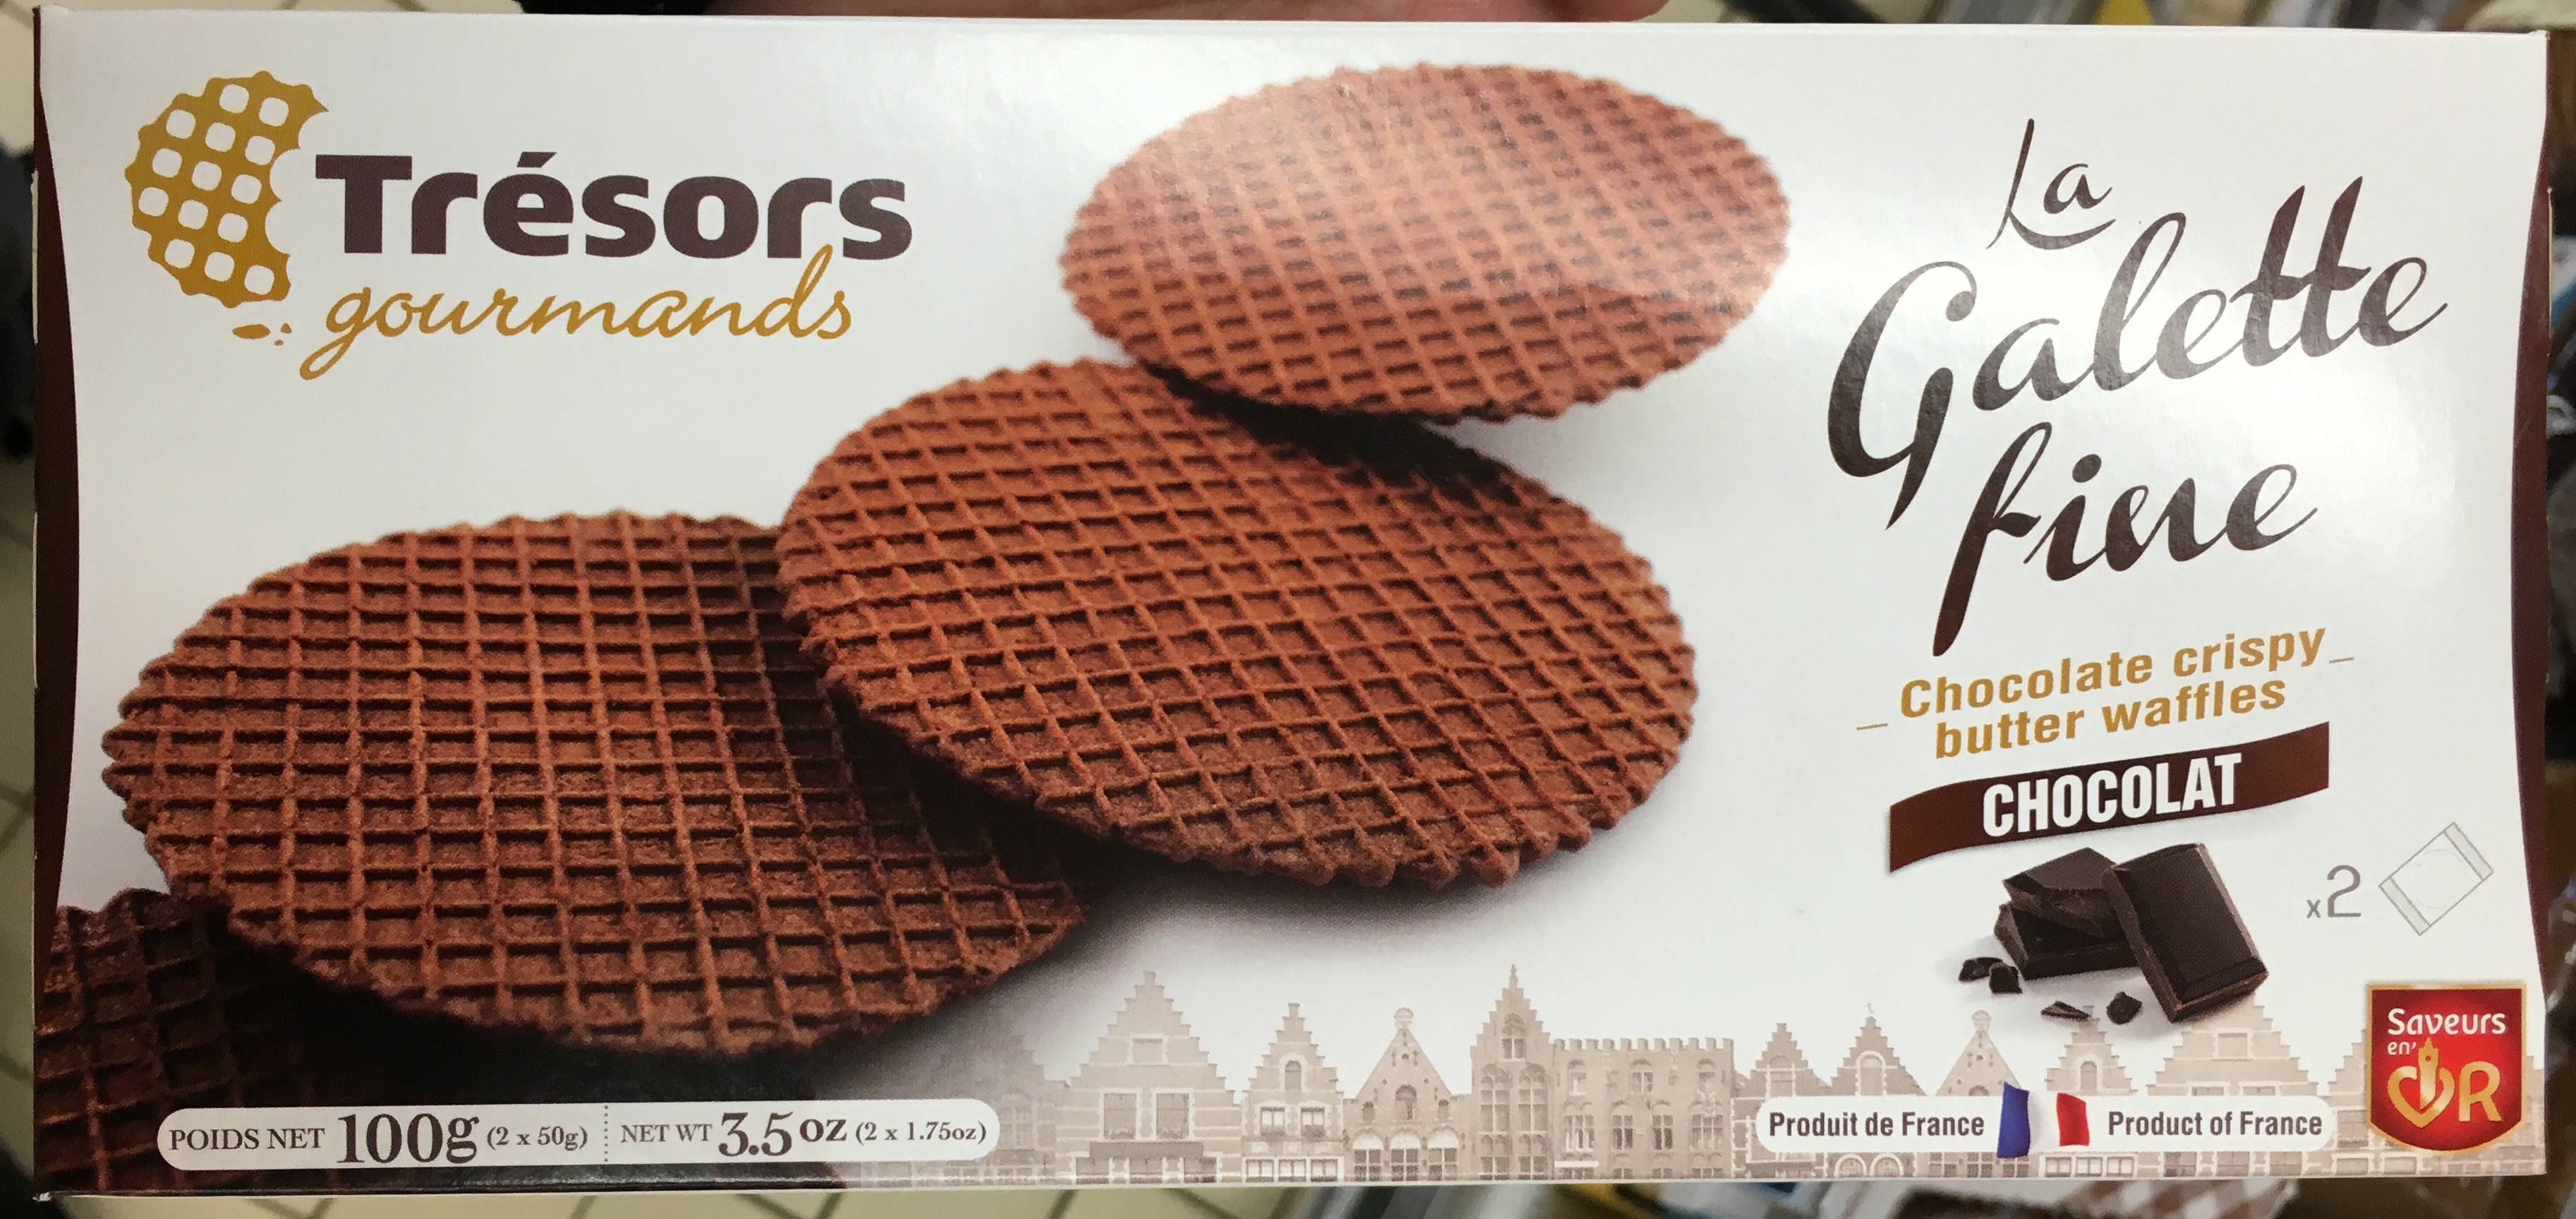 La Galette fine Chocolat - Product - fr